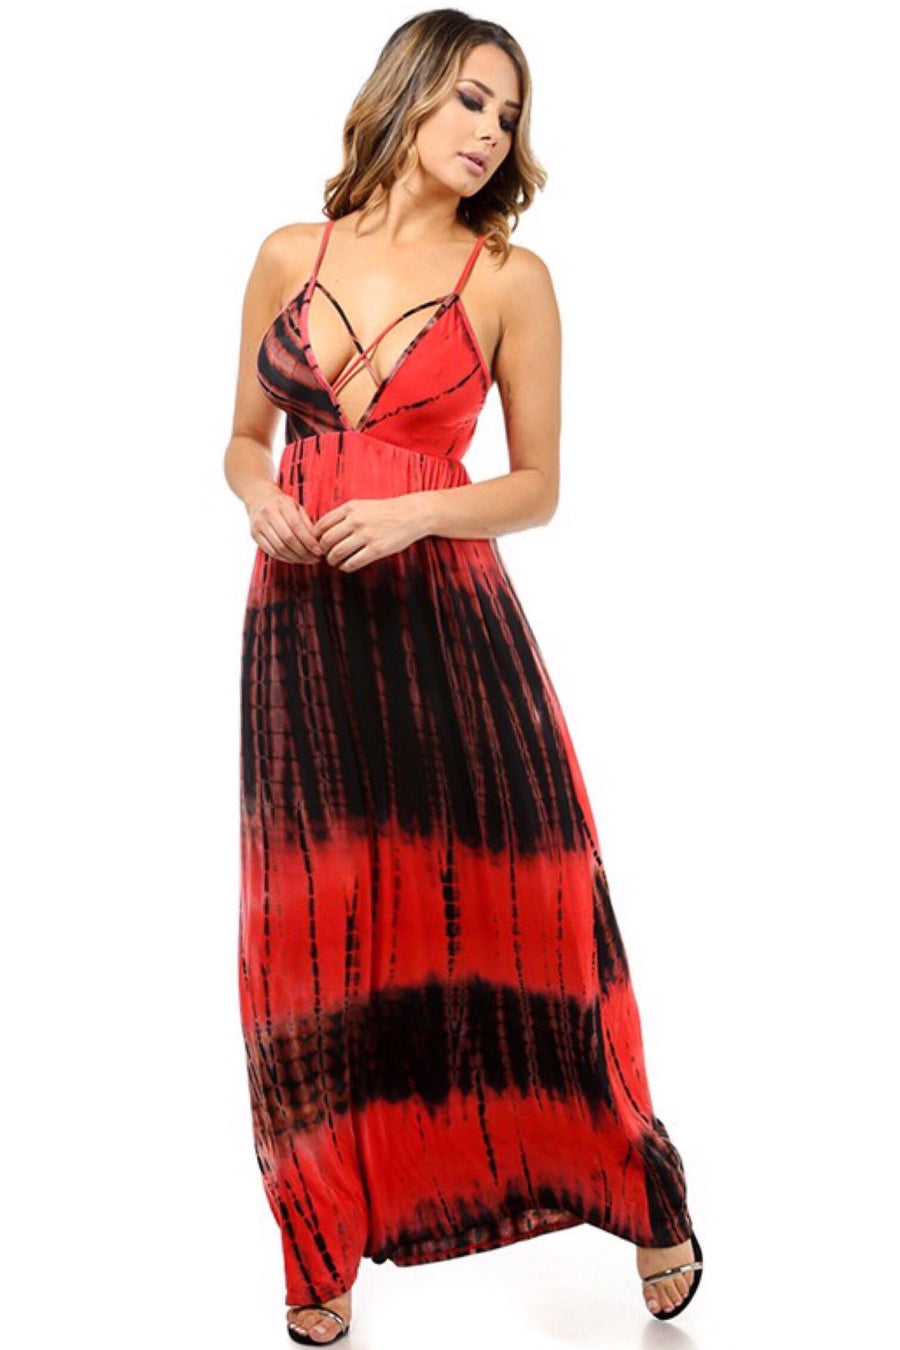 Spaghetti strap dress with tie-dye pattern - Dimesi Boutique